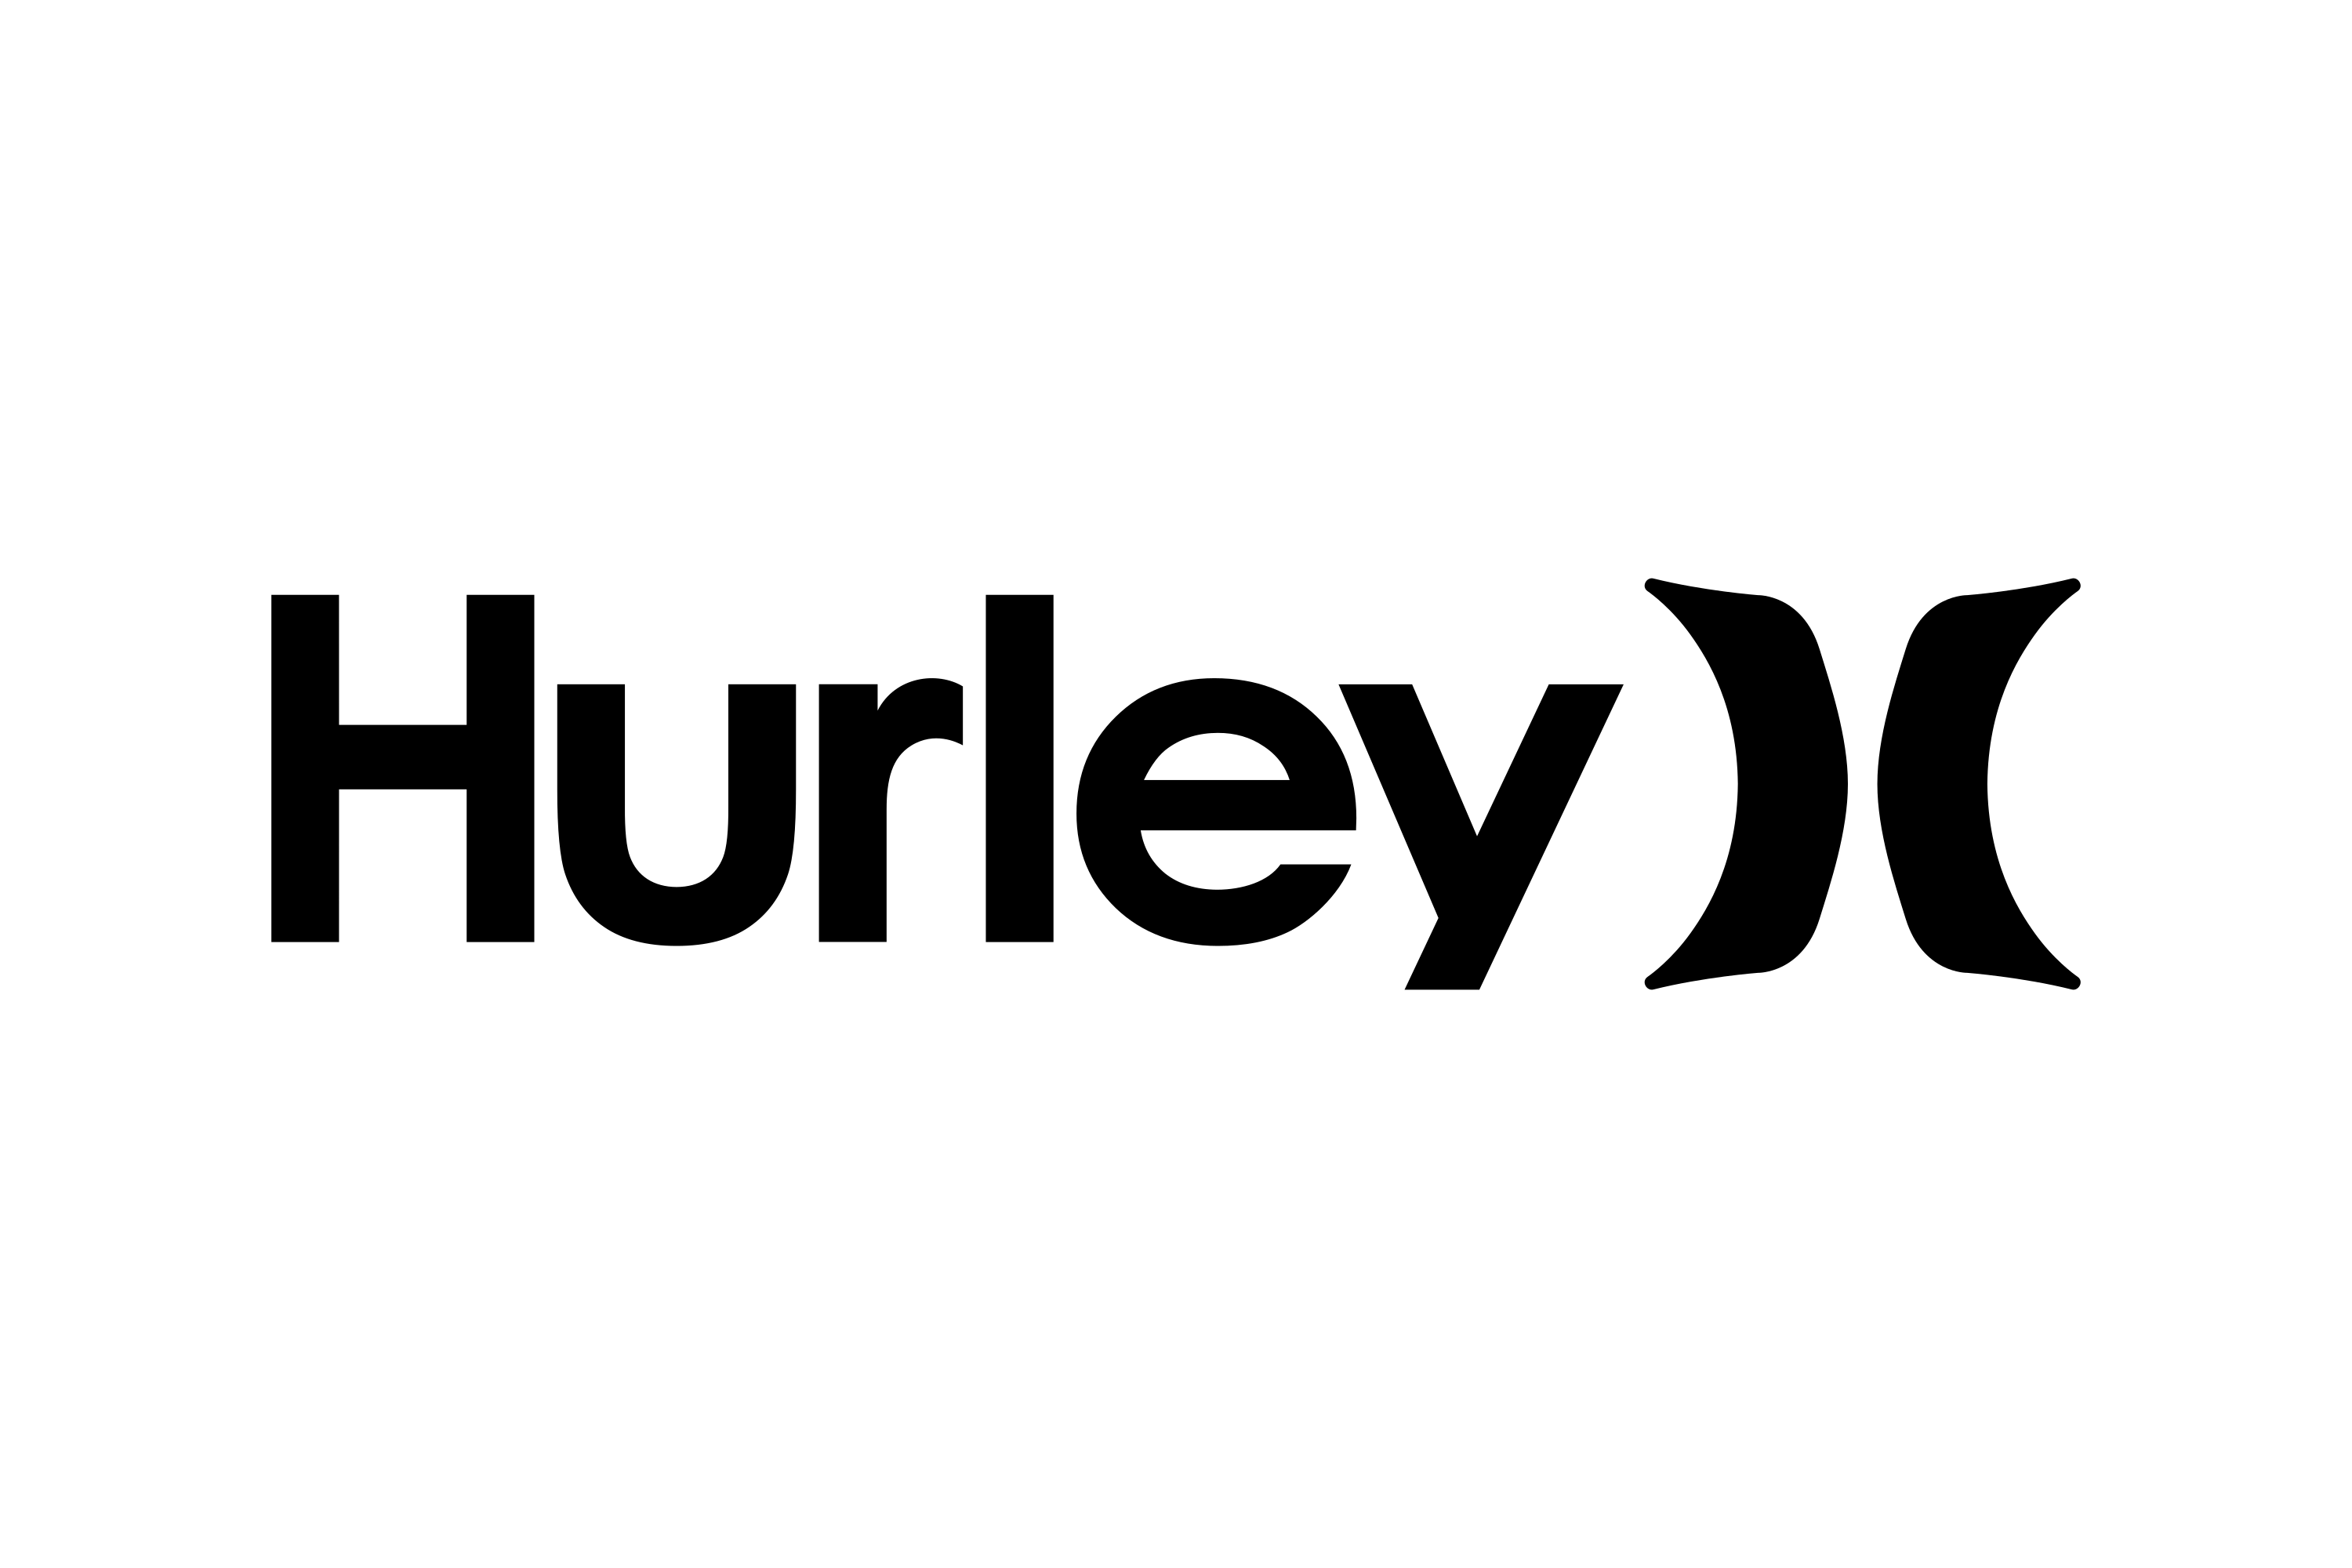 Download Hurley International Logo in SVG Vector or PNG File Format